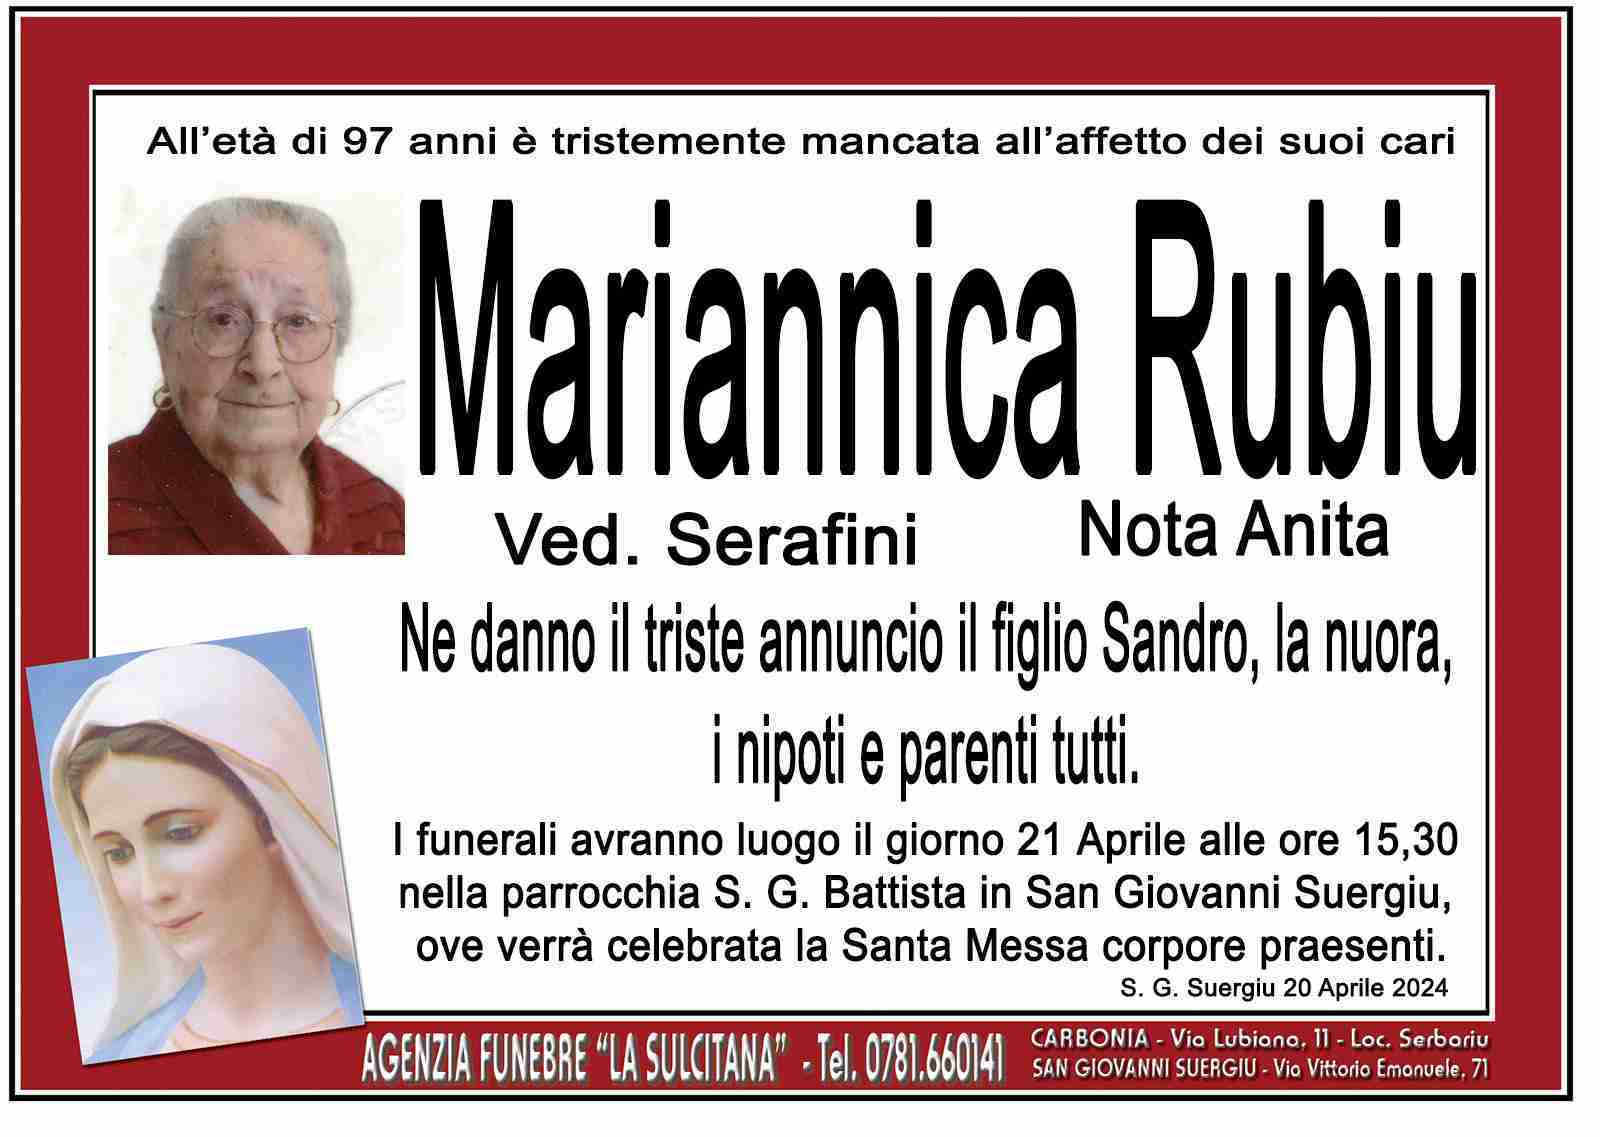 Mariannica Rubiu